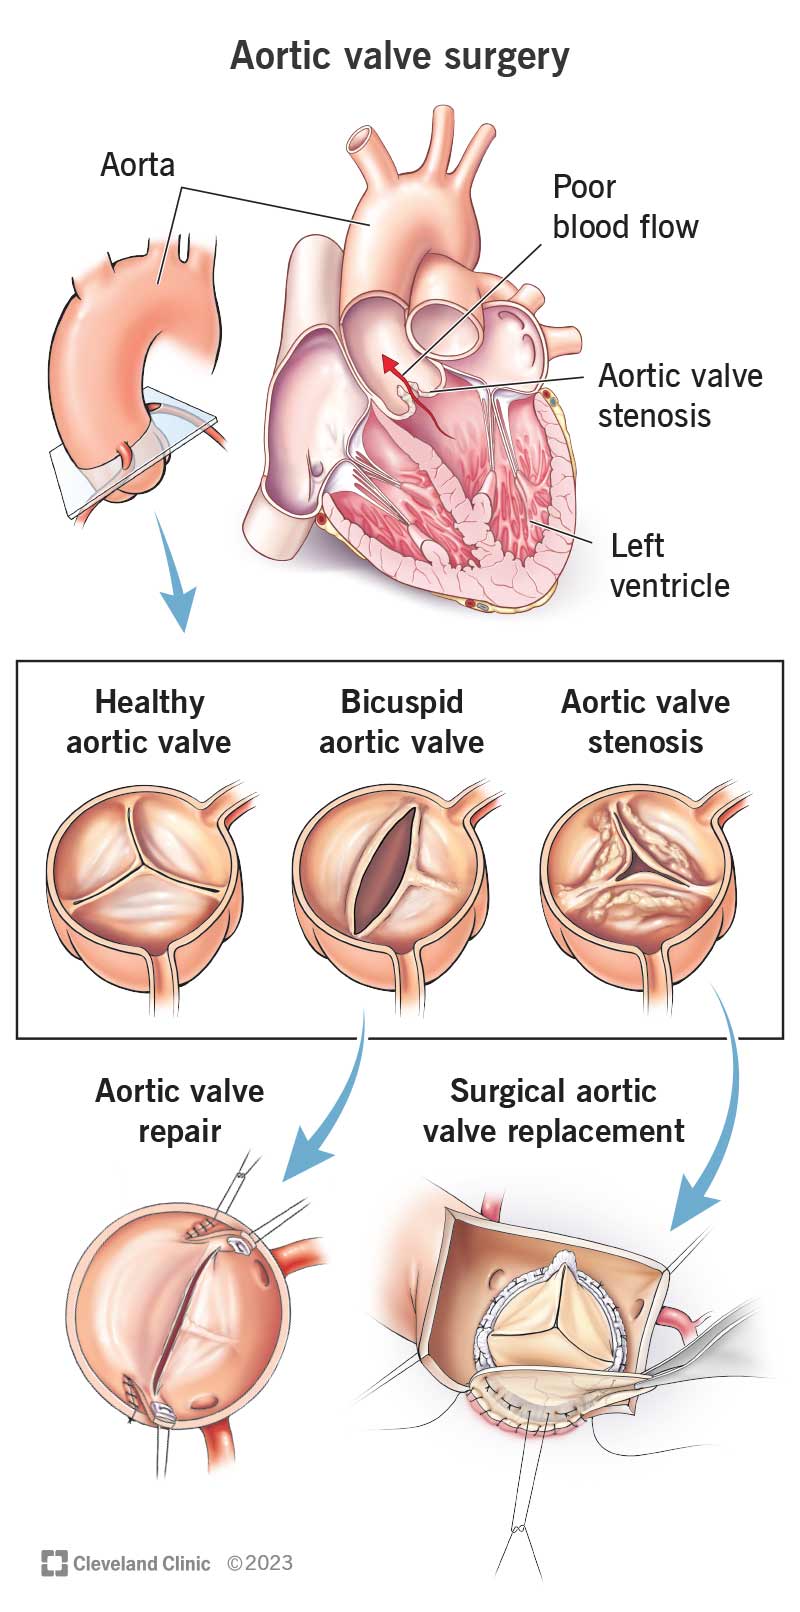 Riparazione e sostituzione della valvola aortica.